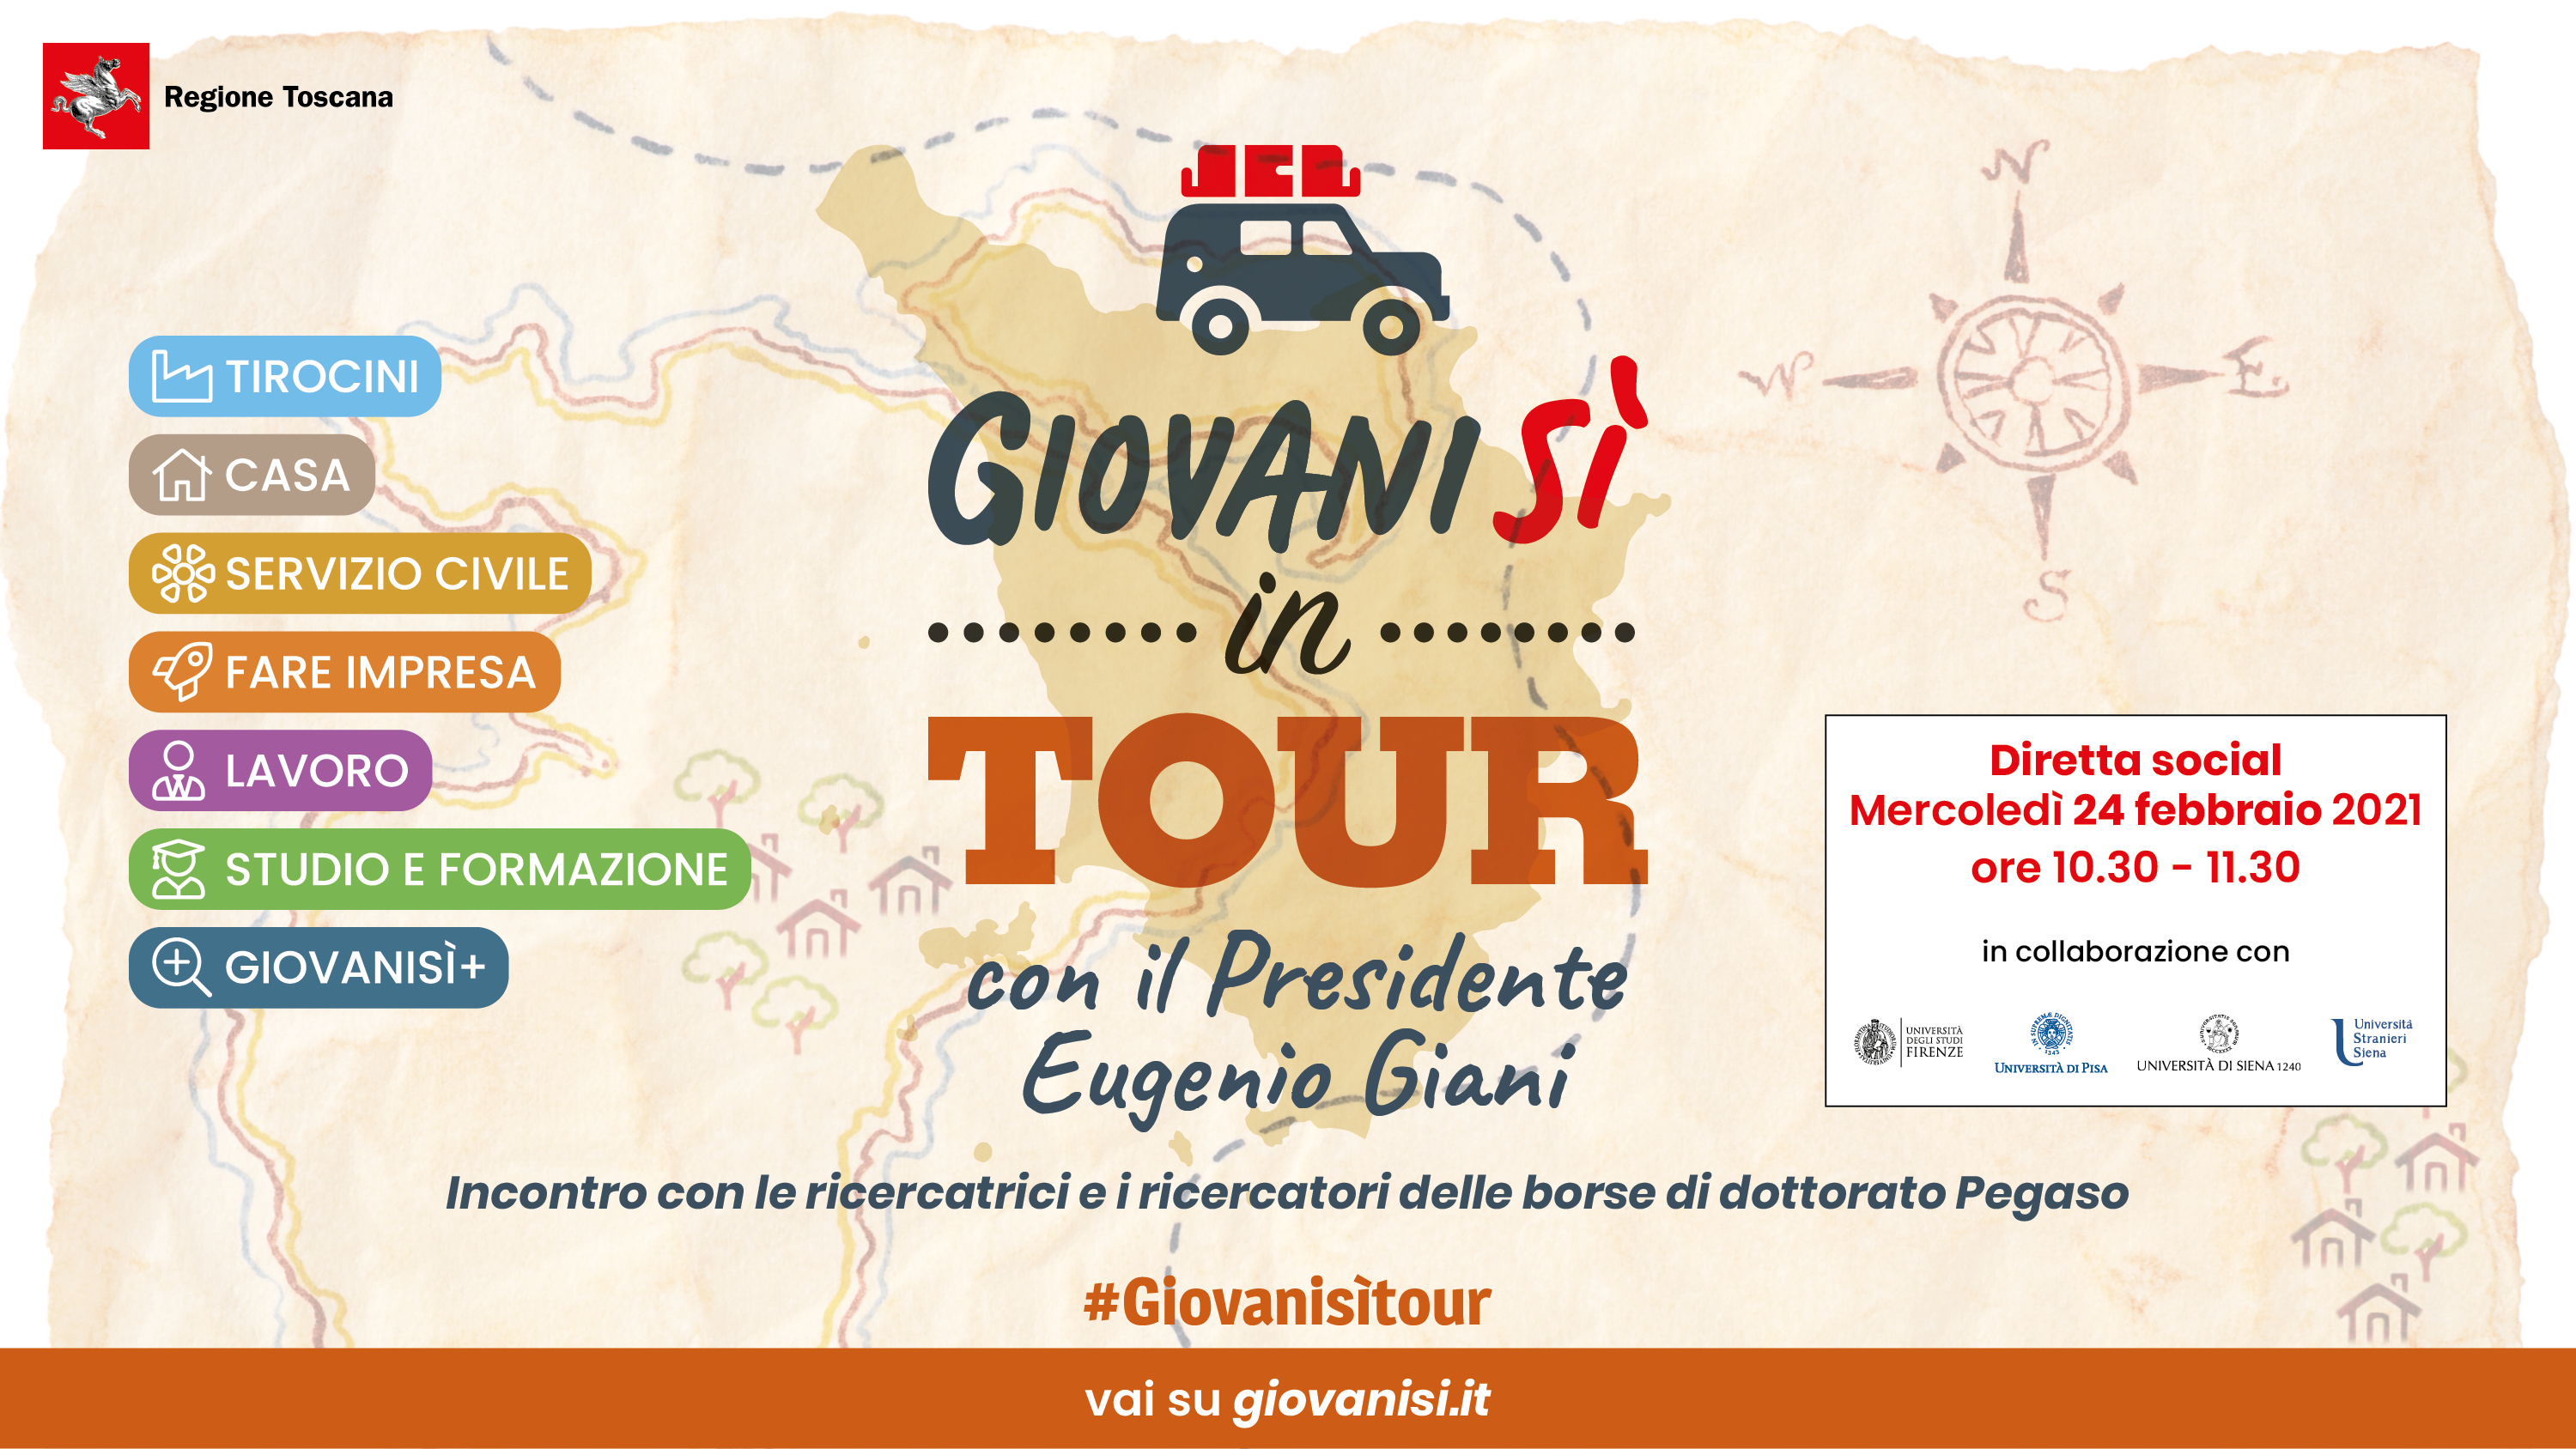 Il presidente Giani in tour con Giovanisì: prima tappa con diretta social il 24/2